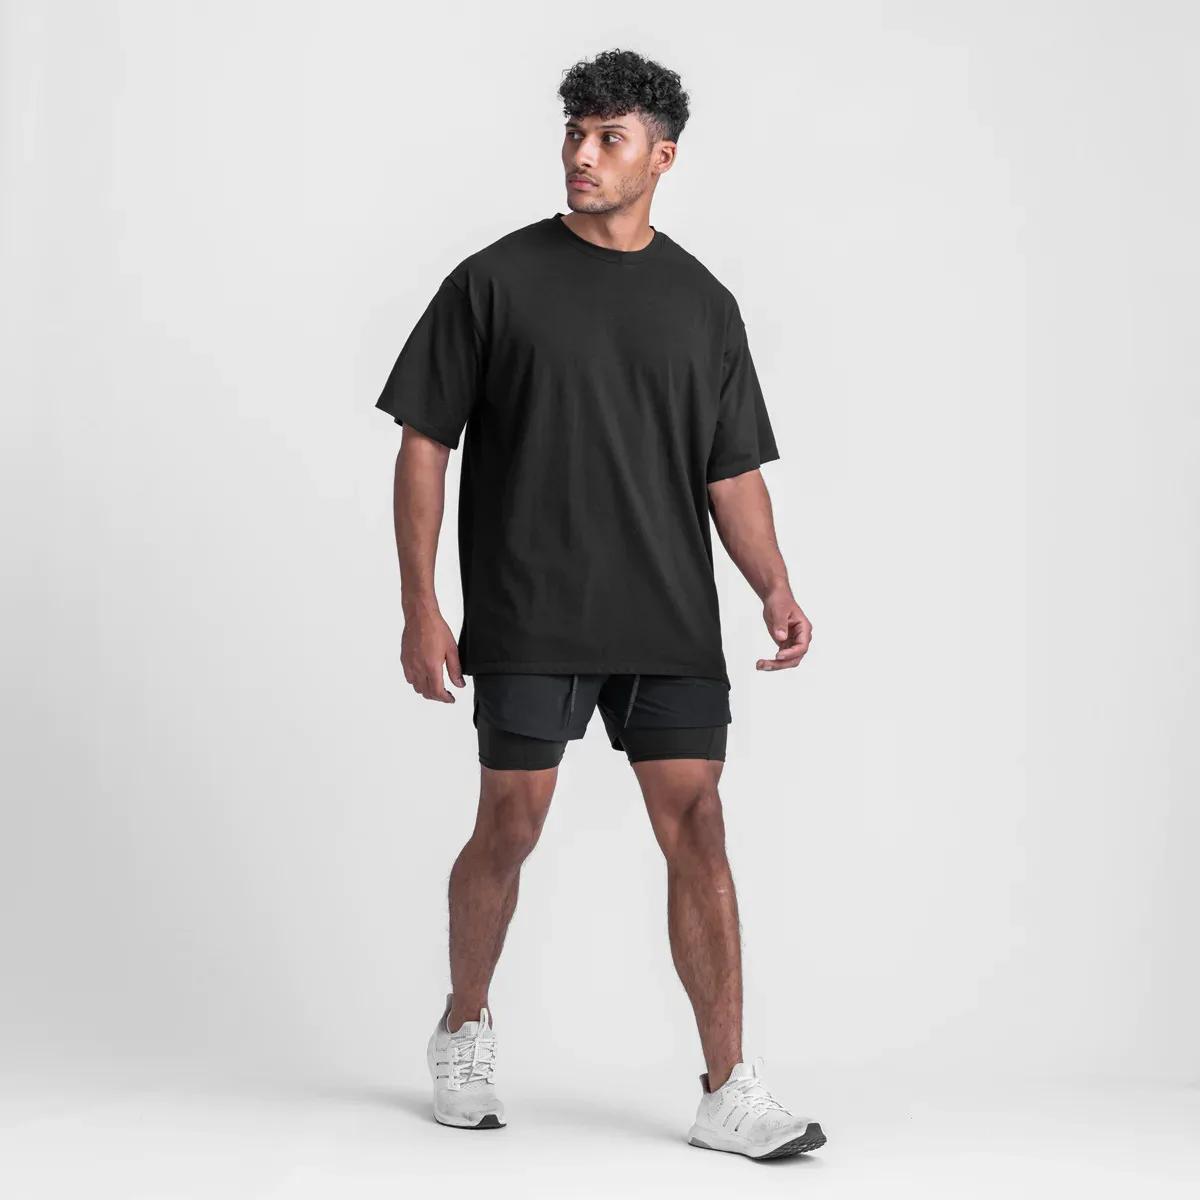 Hot Summer Men's Short Sleeve T Shirts High Quality Running Workout T ...